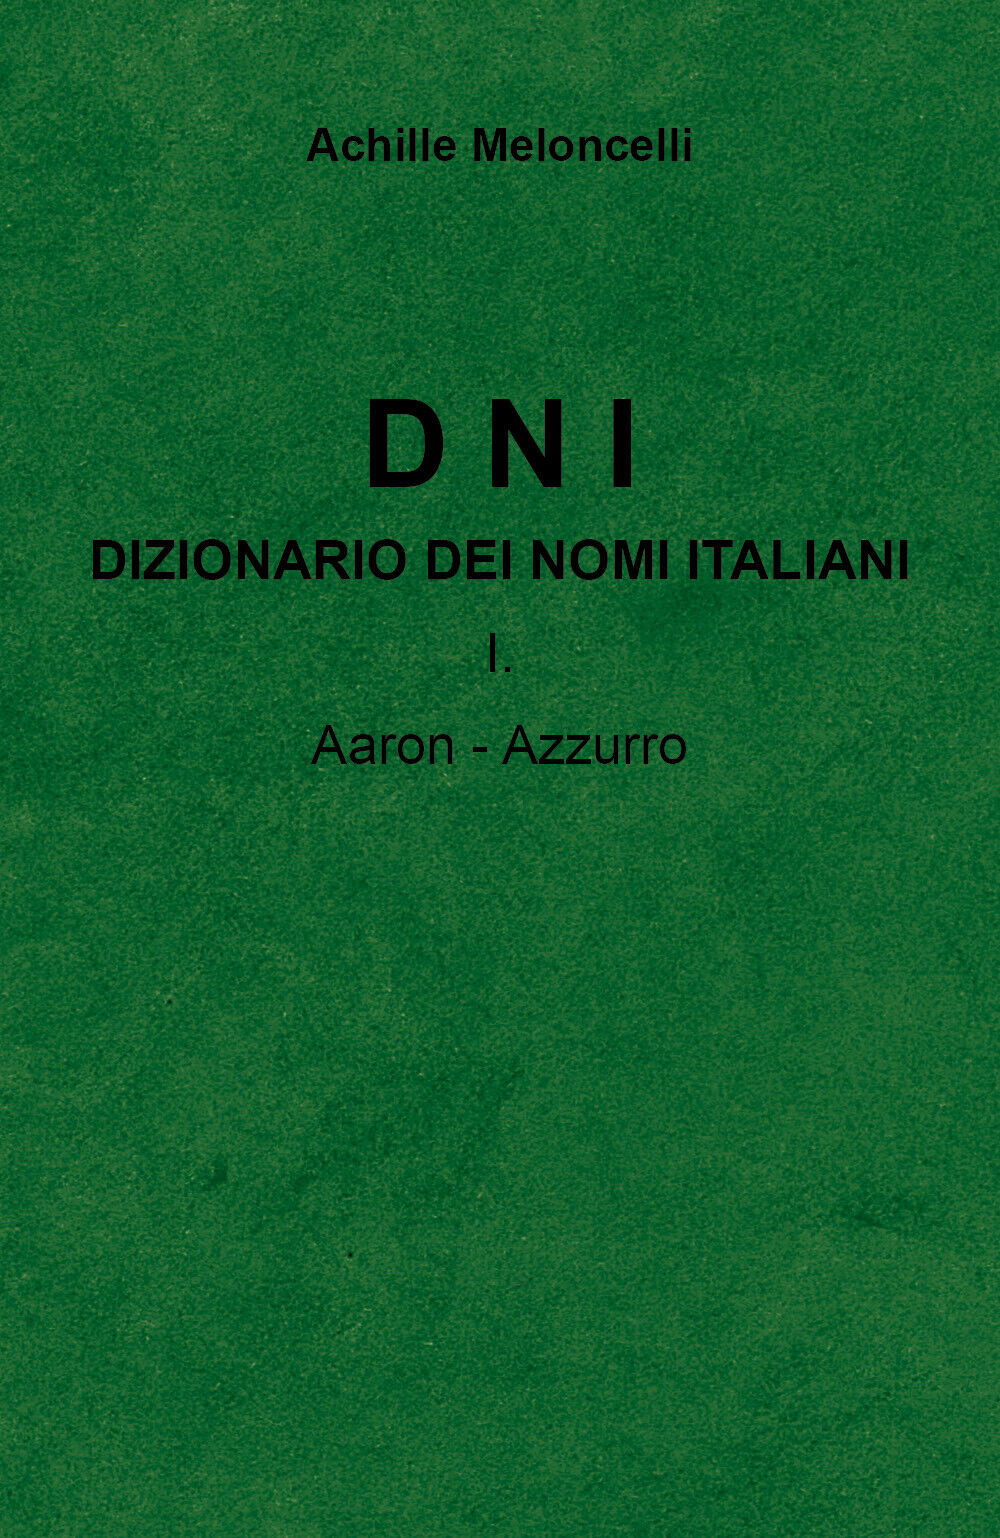 DNI Dizionario dei nomi italiani I.A di Achille Meloncelli,  2022,  Youcanprint libro usato